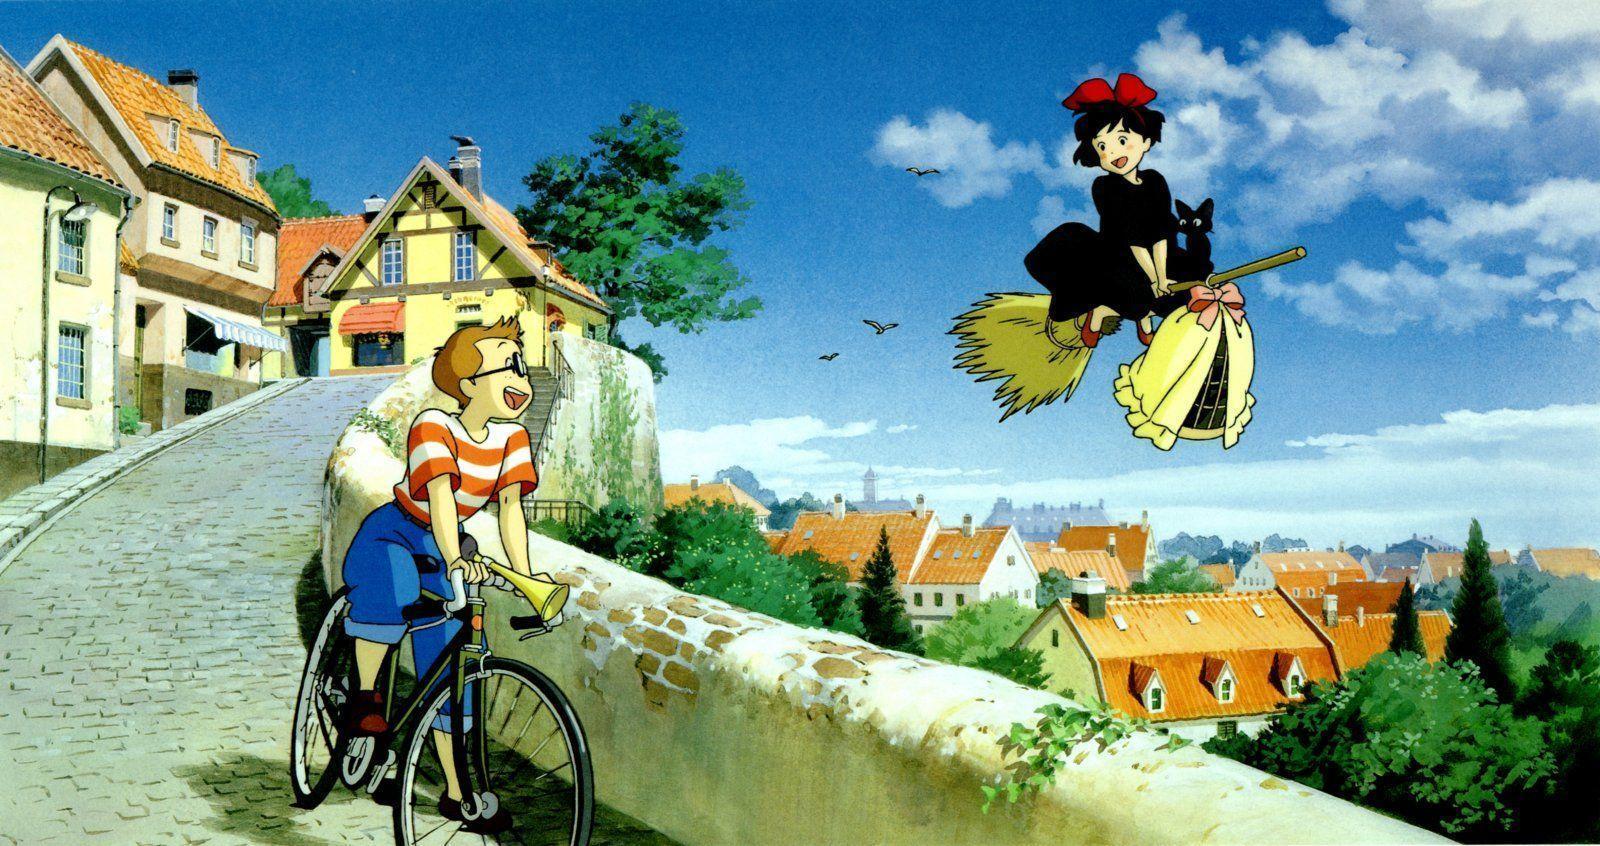 Desktop Wallpaper Studio Ghibli 1920 X 1080 375 Kb Jpeg